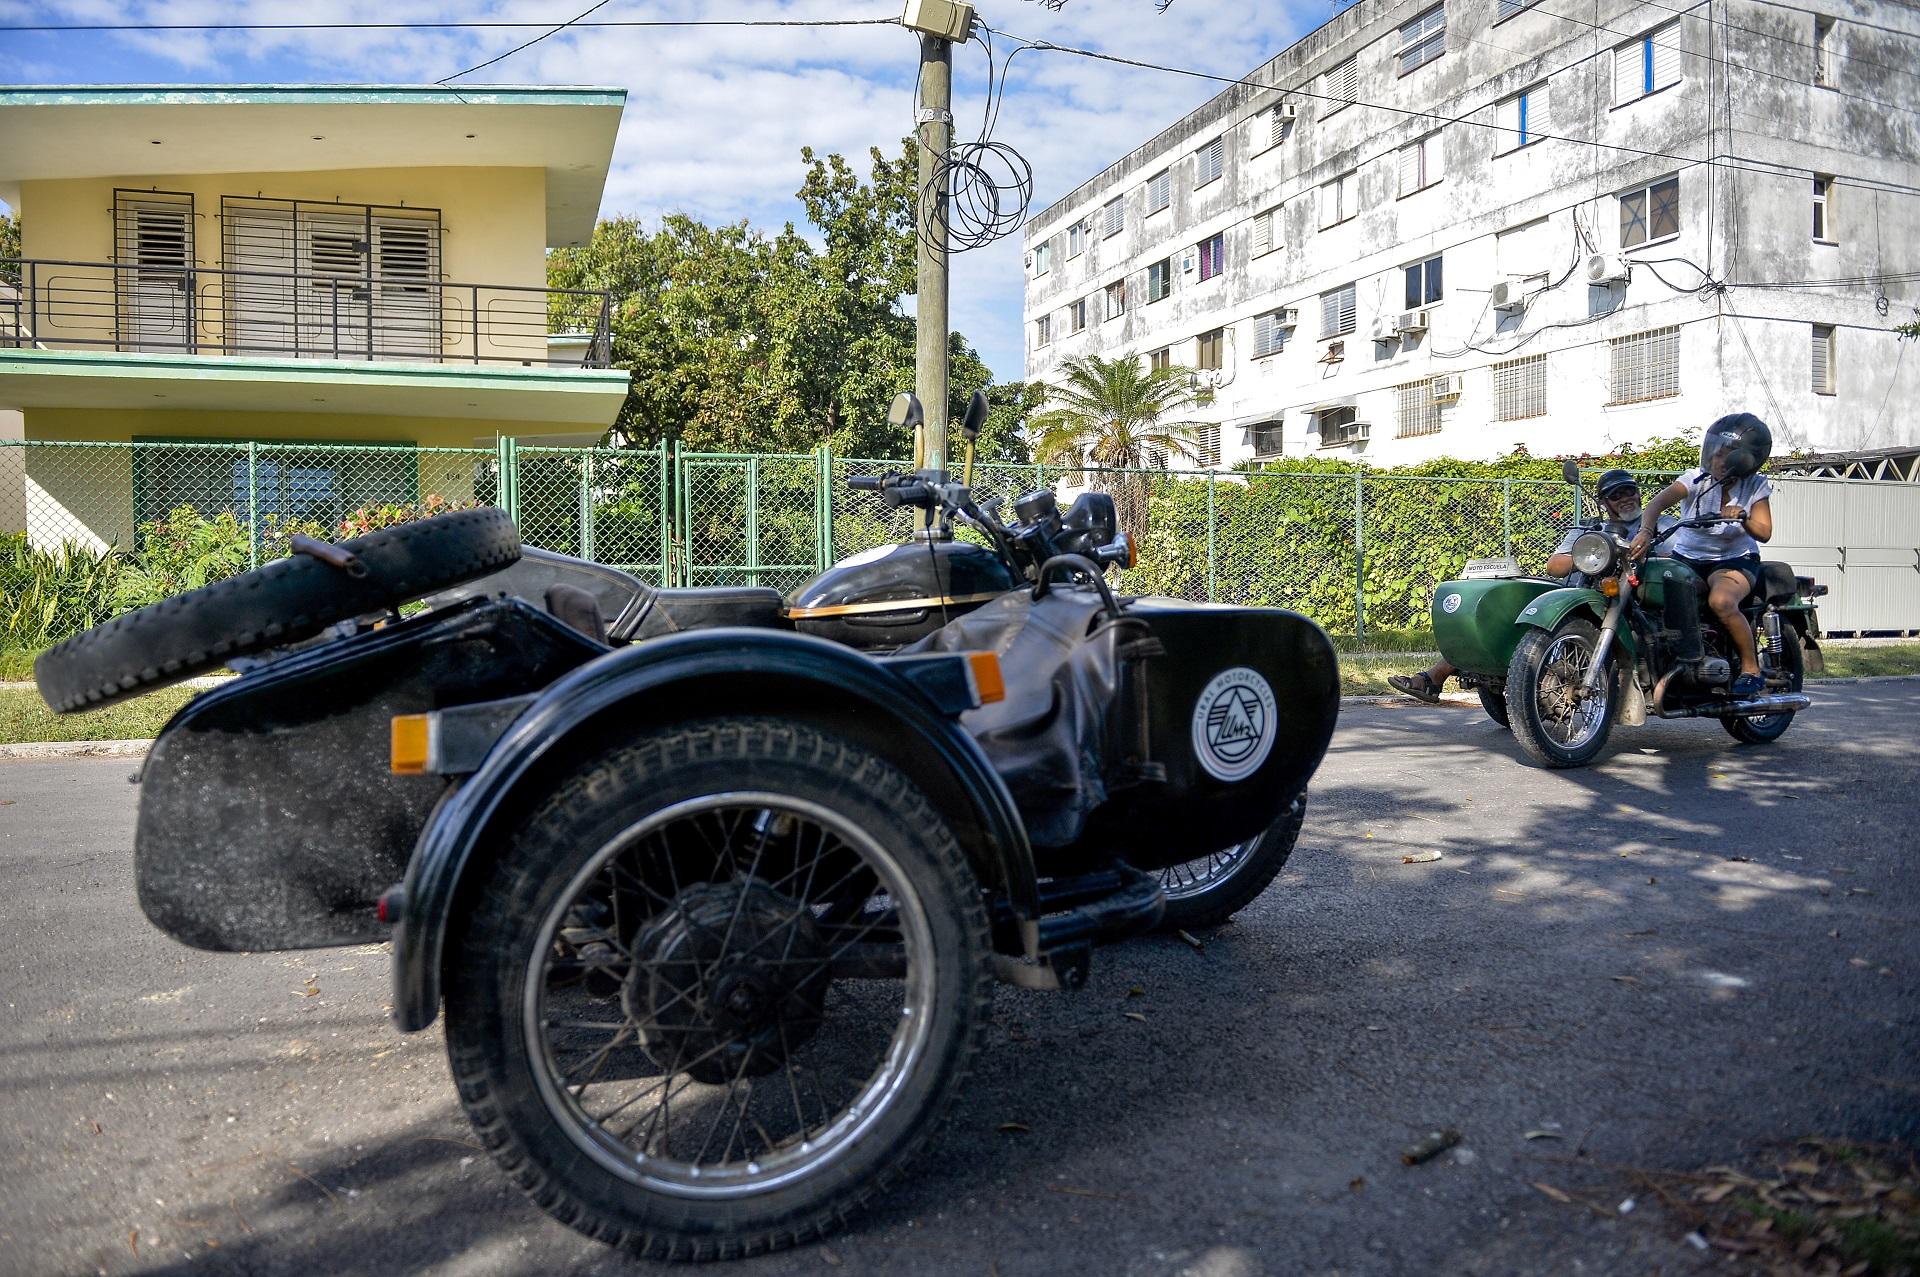 دراجات سايدكار نارية في هافانا الكوبية. 21 فبراير 2019 / أ ف ب